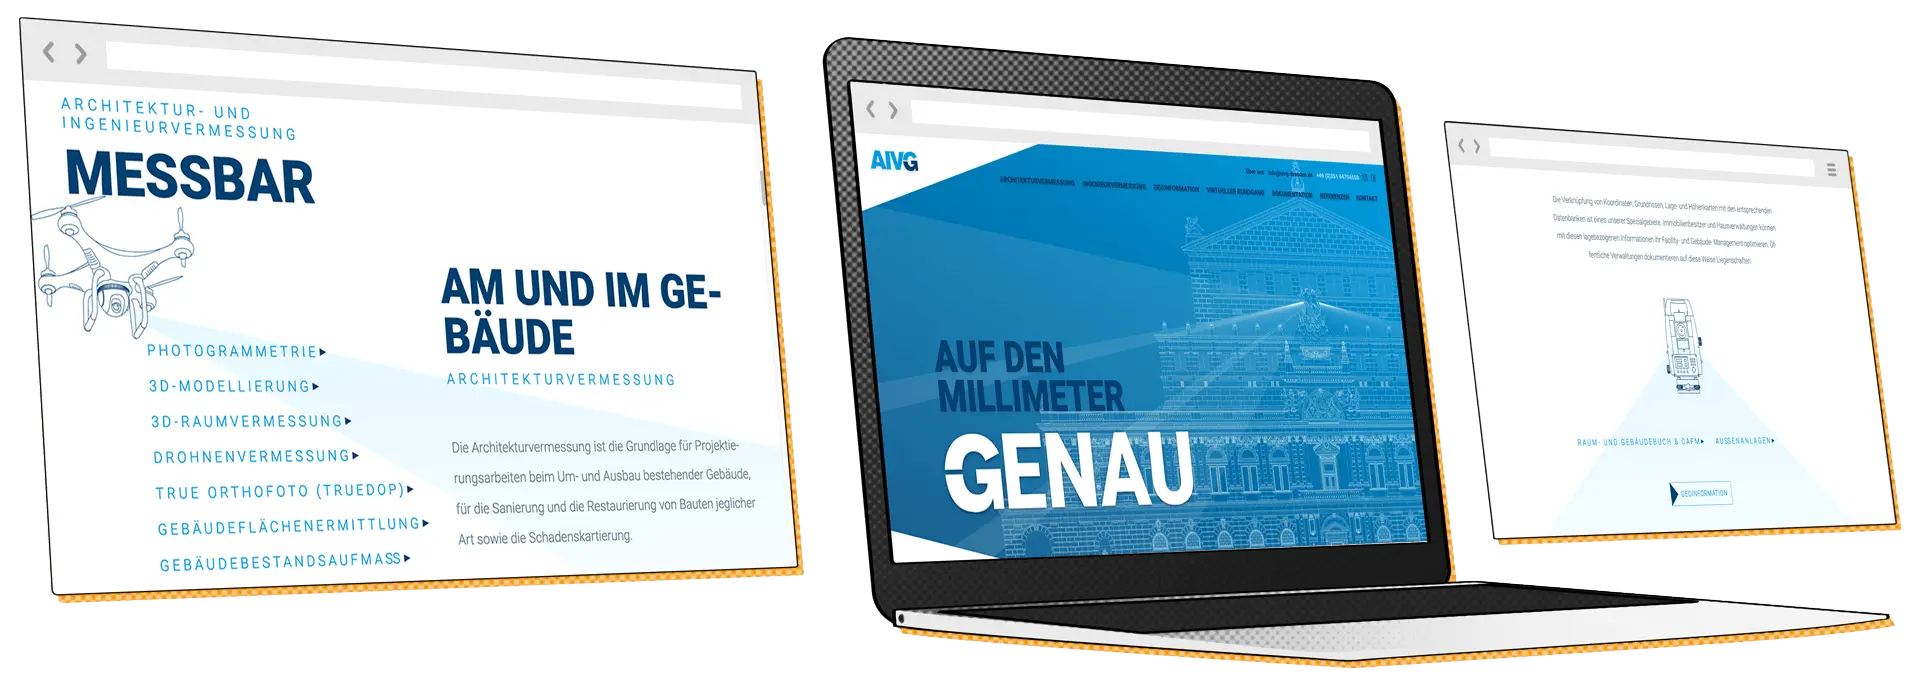 Redesign der AIVG Website made by Feuerpanda Werbeagentur Dresden